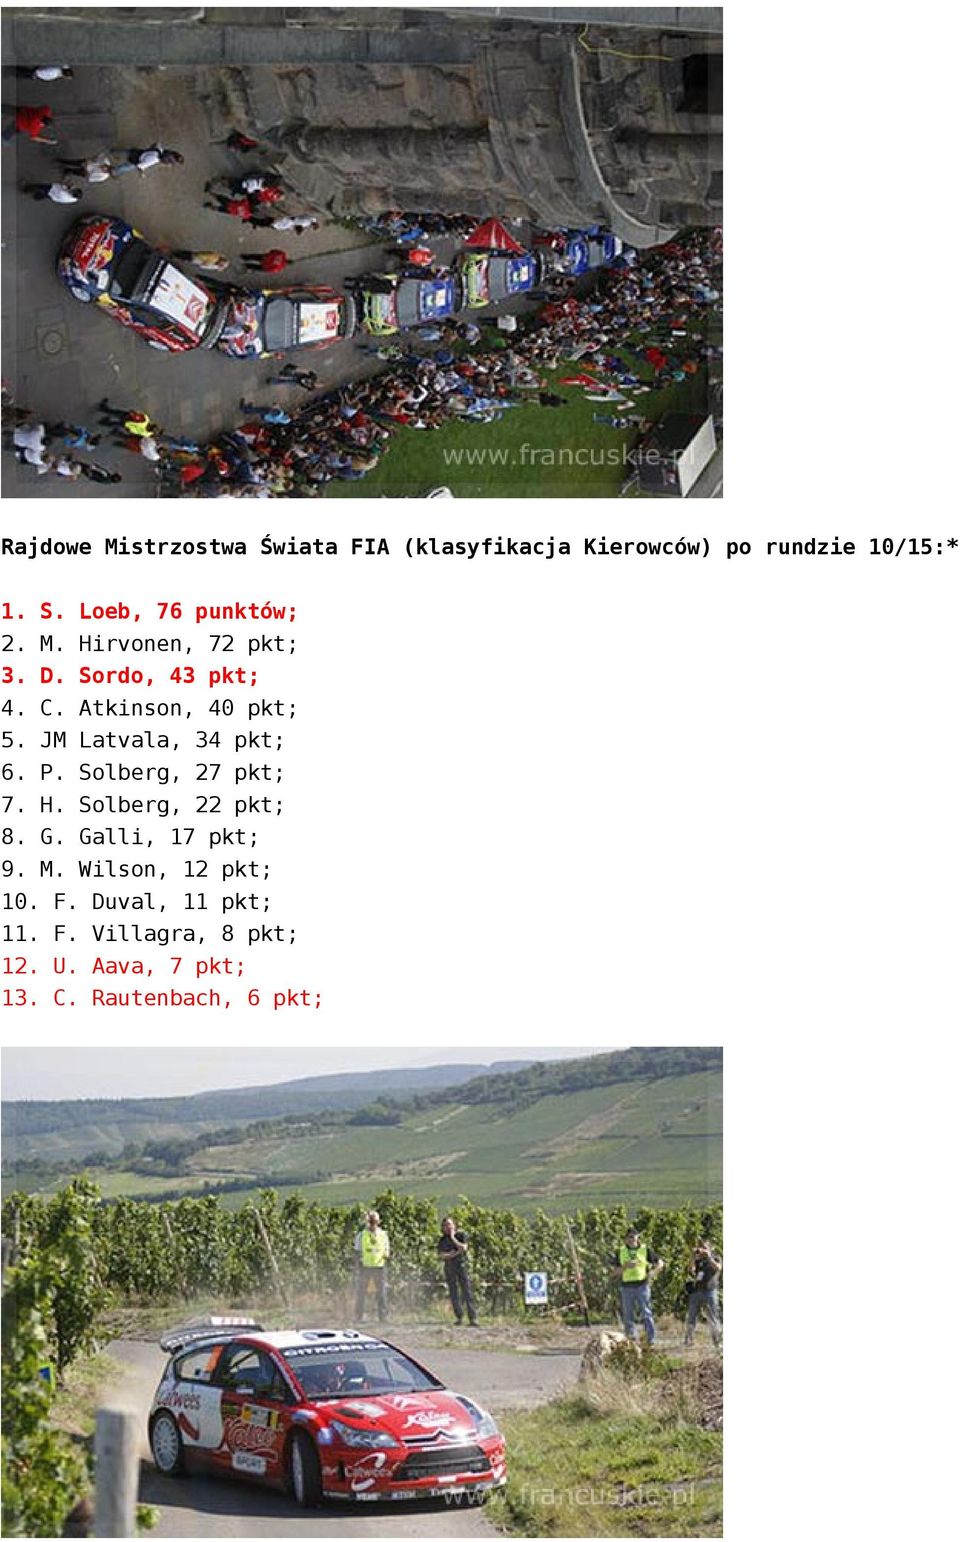 JM Latvala, 34 pkt; 6. P. Solberg, 27 pkt; 7. H. Solberg, 22 pkt; 8. G. Galli, 17 pkt; 9. M.